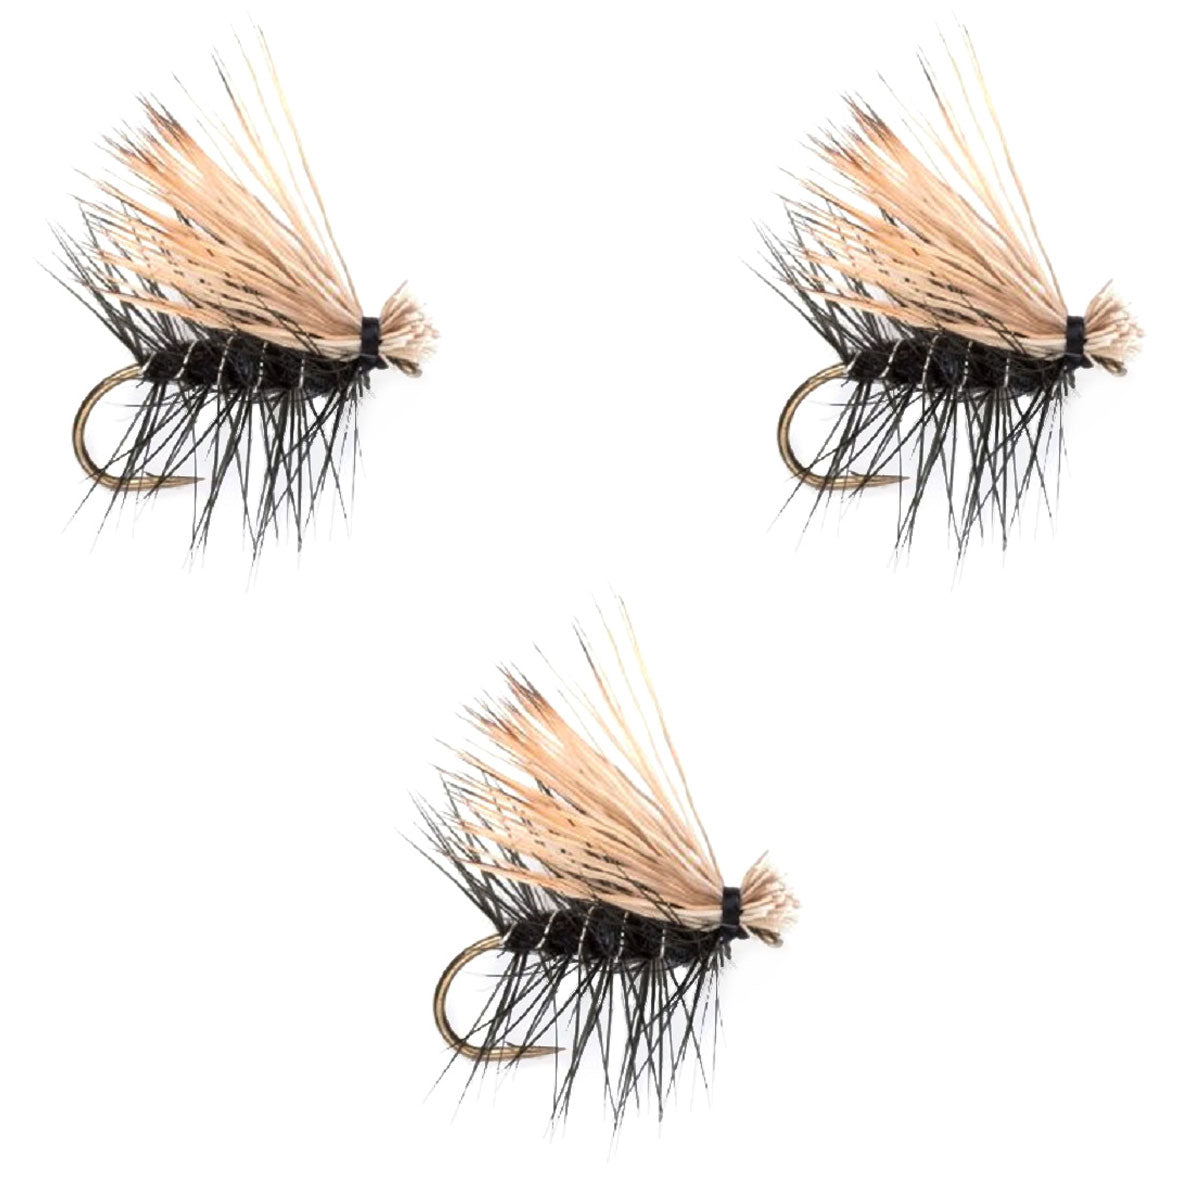 Paquete de 3 moscas secas para trucha Caddis Classic de pelo de alce negro, tamaño 16